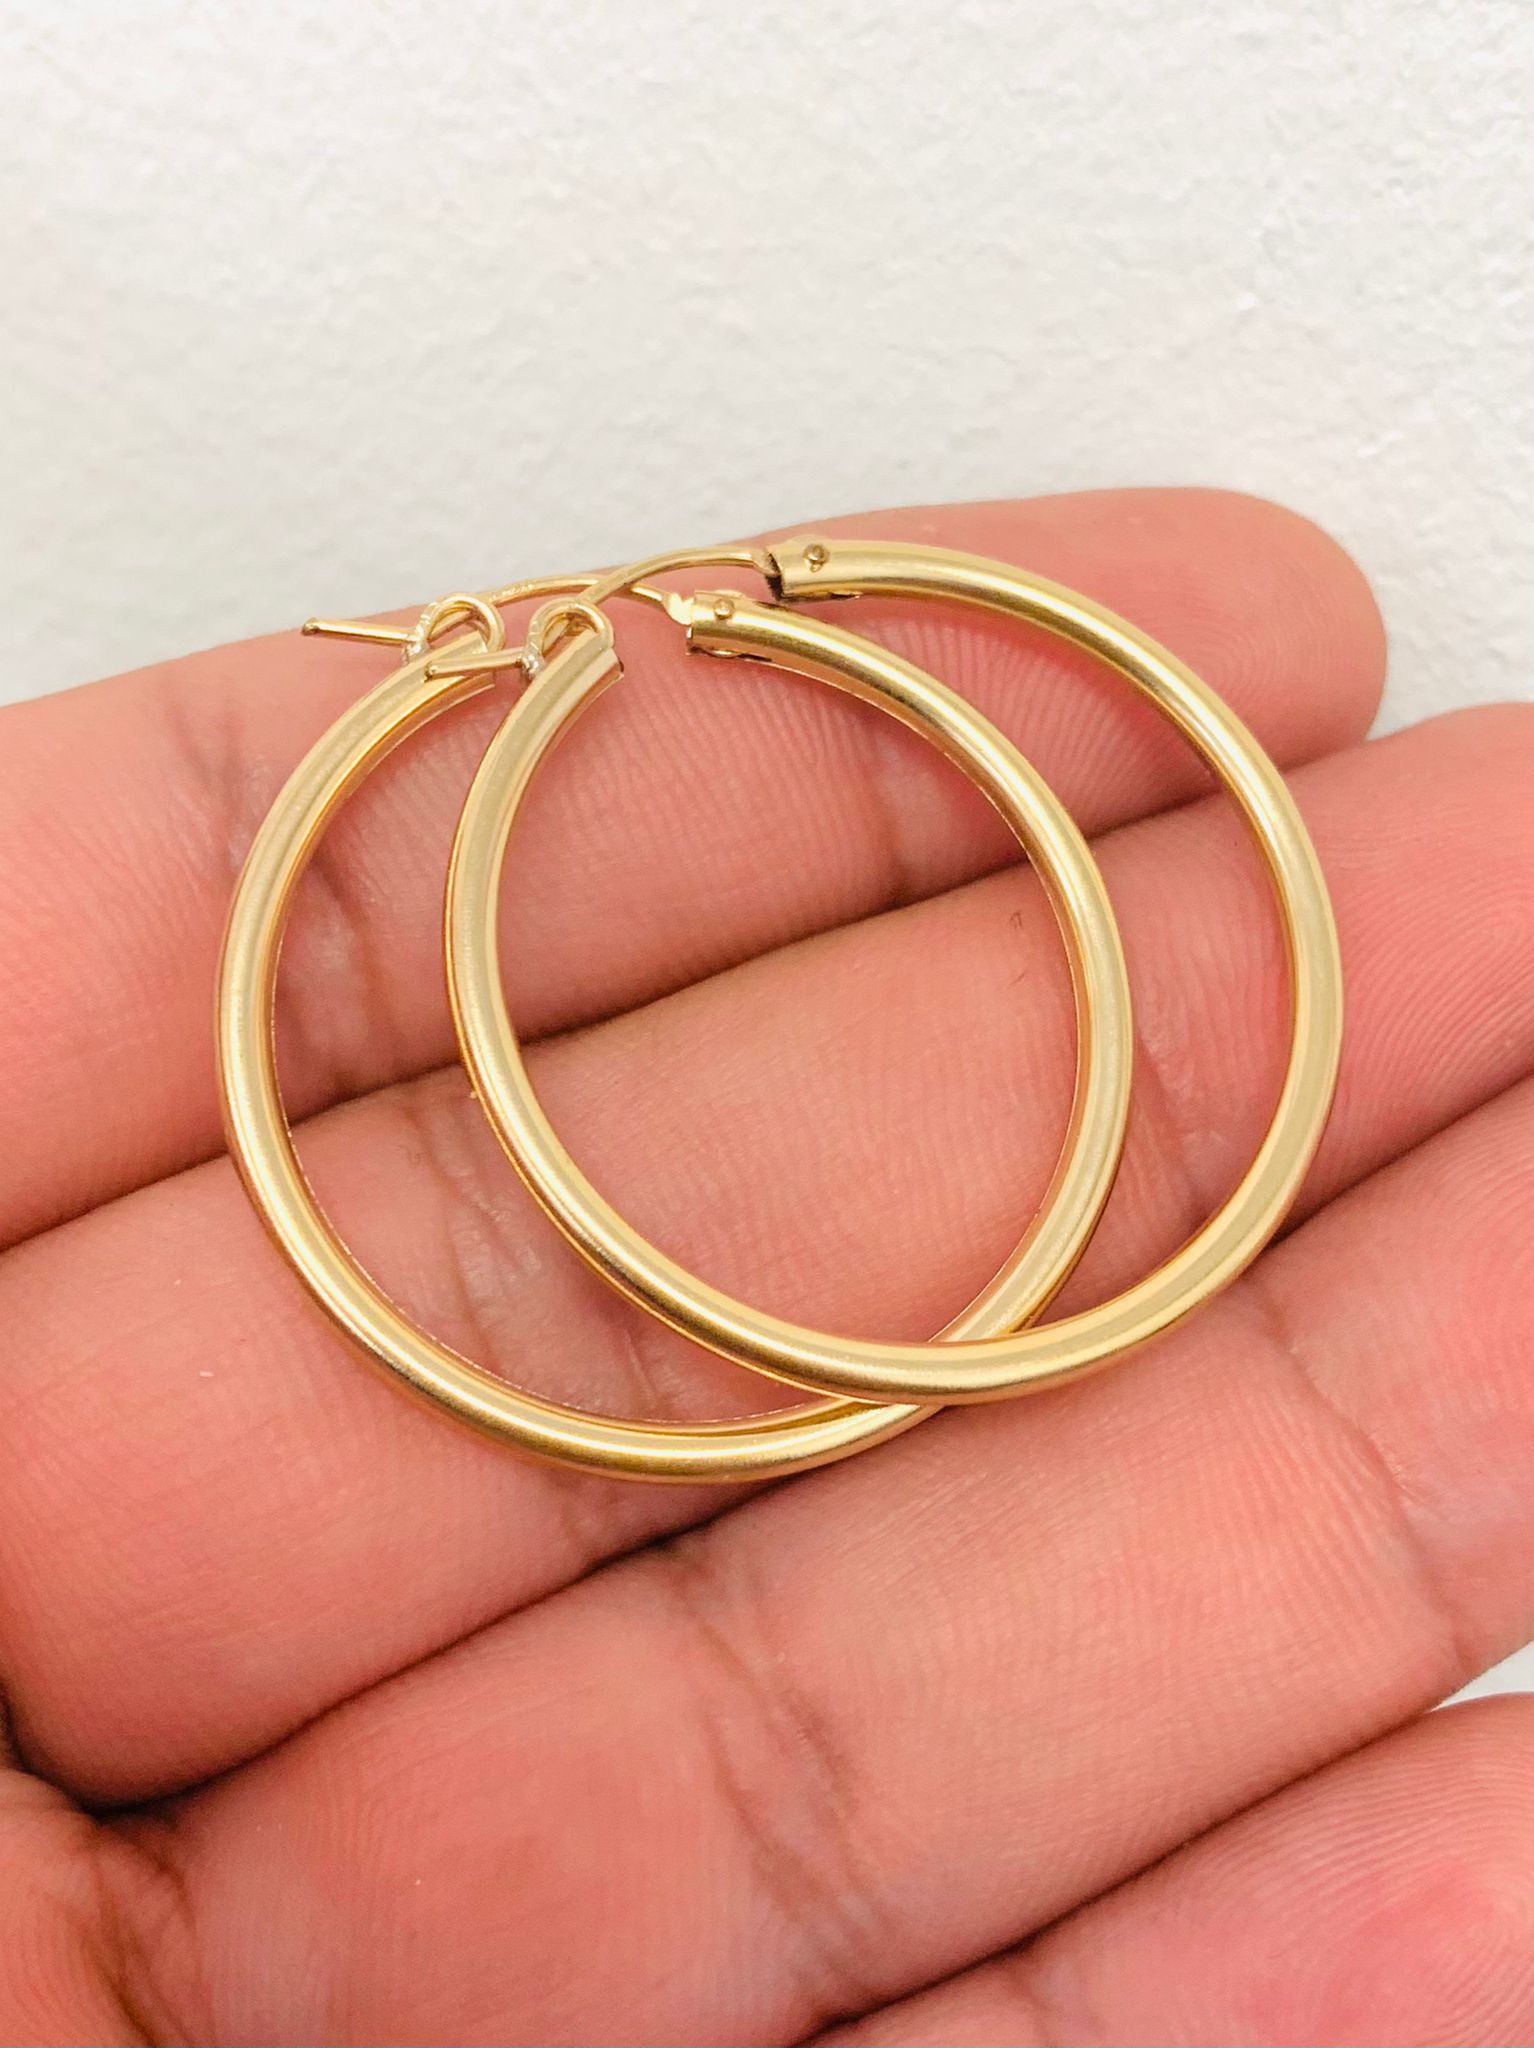 Womens Hoop Earrings / 14K Real Gold Filled Hoop Earrings